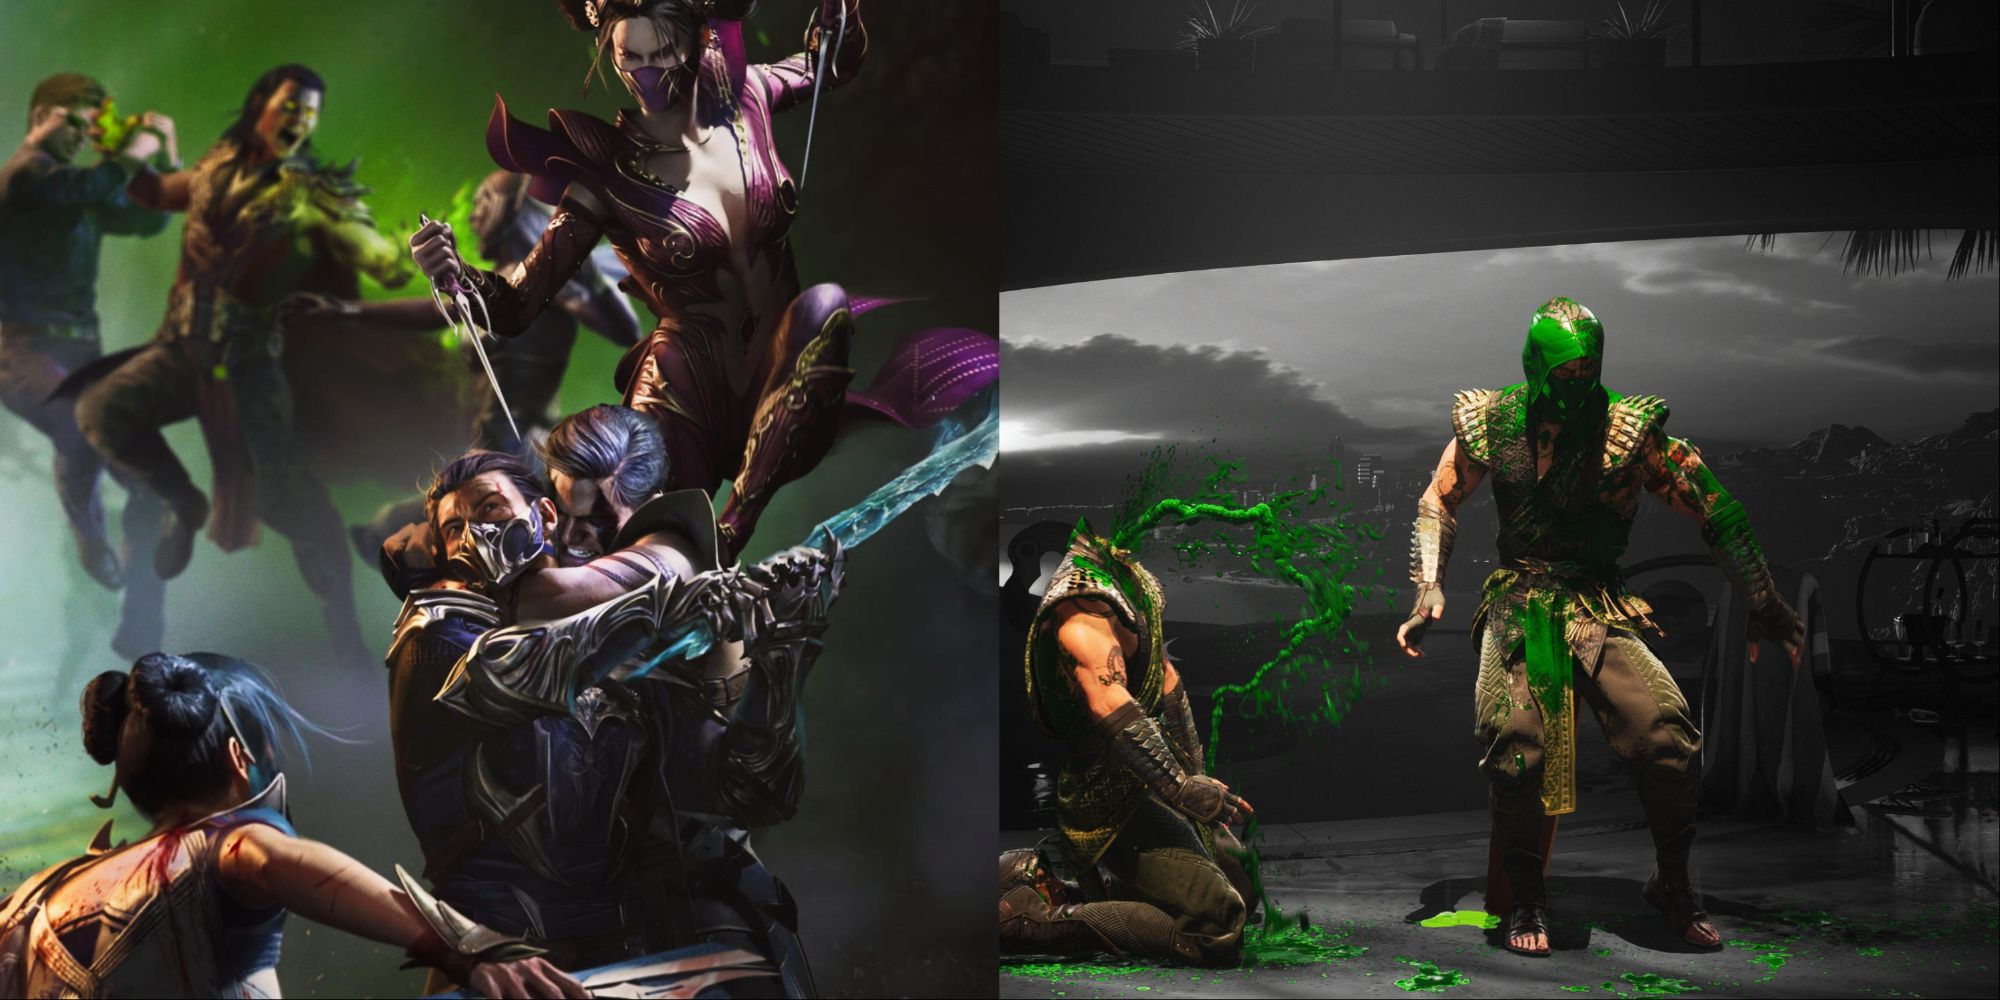 Eine Collage, die links eine Gruppe kämpfender Charaktere und rechts ein Reptil zeigt, das eine Brutalität ausführt.